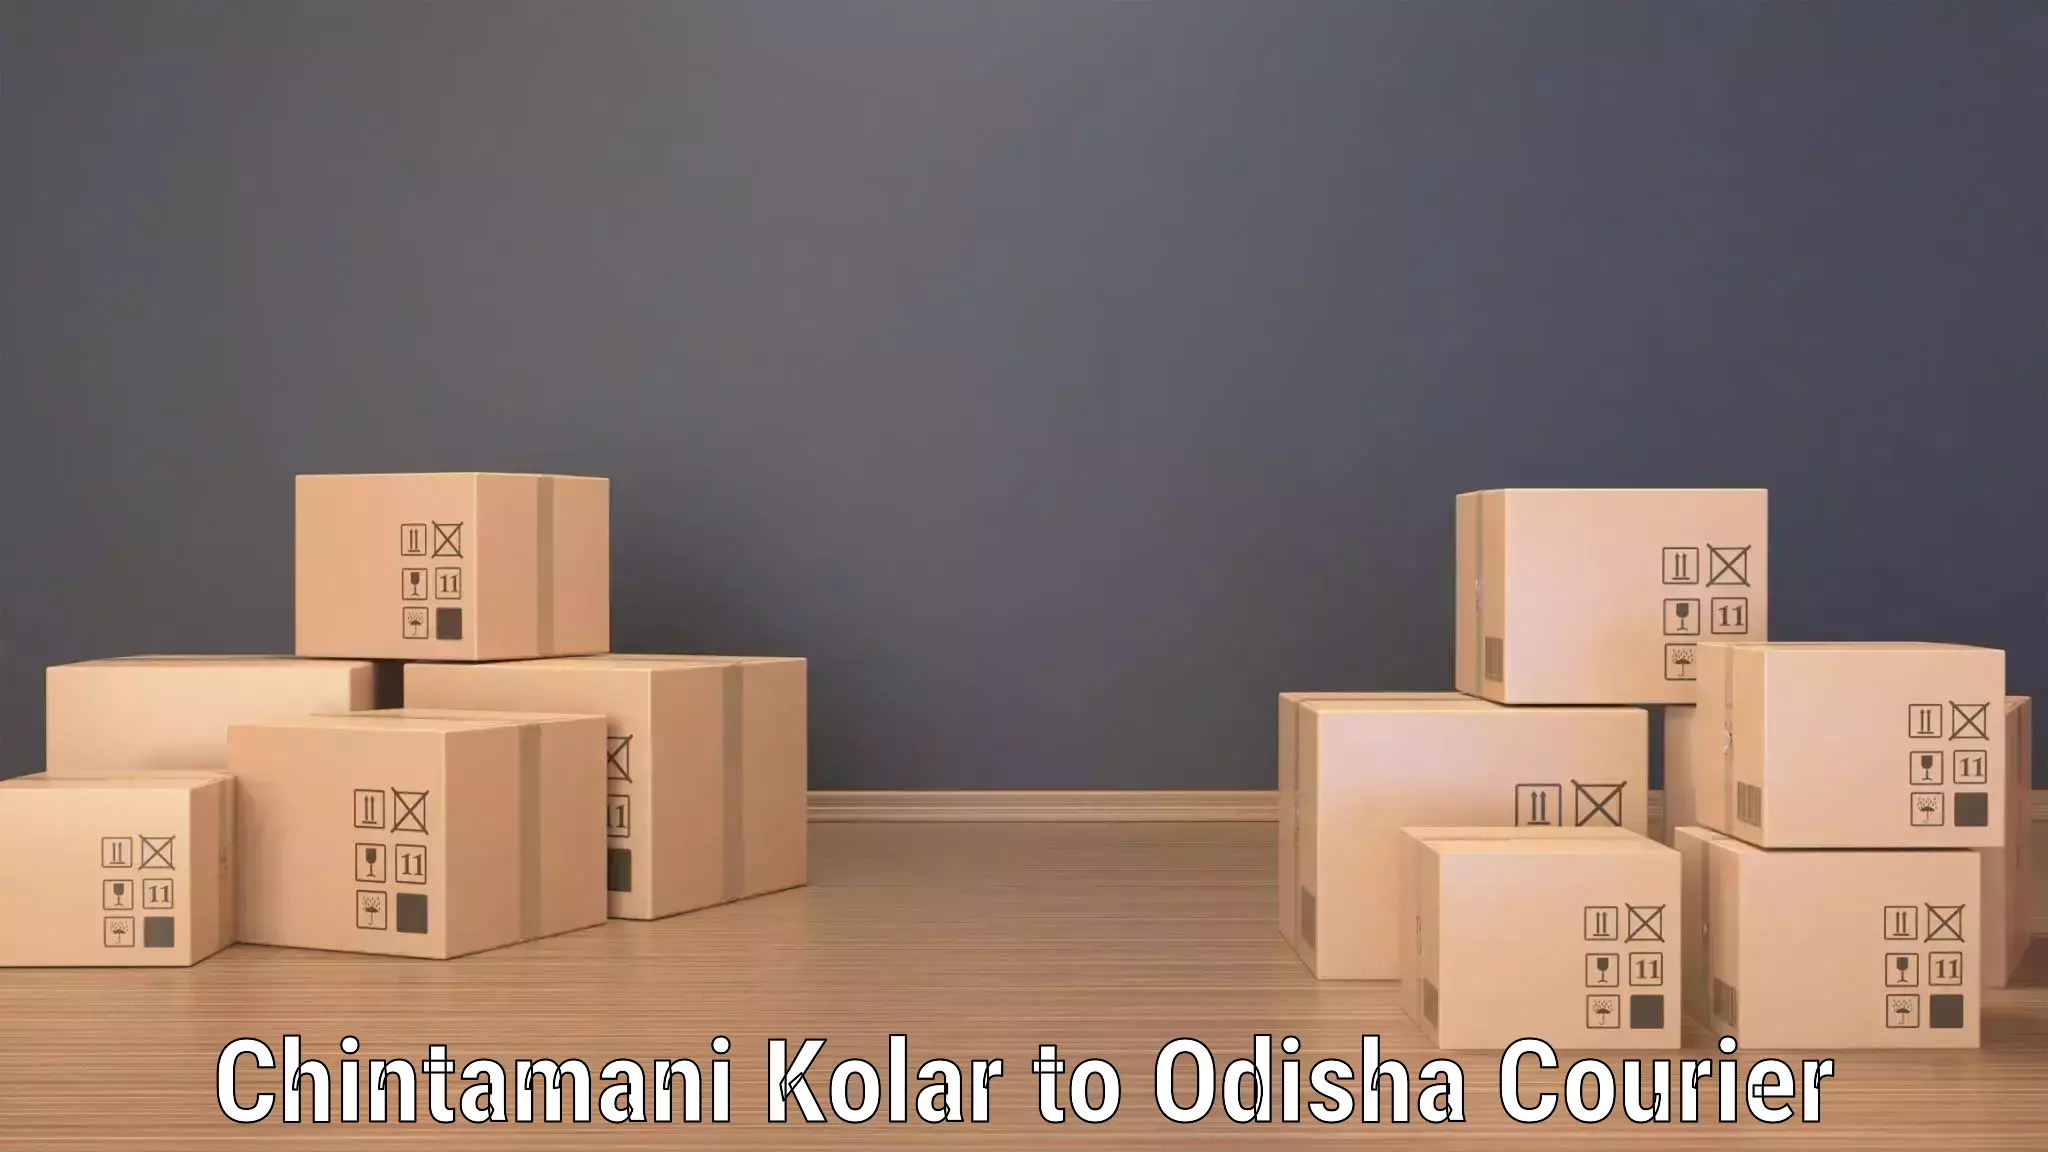 Bulk shipping discounts in Chintamani Kolar to Dandisahi